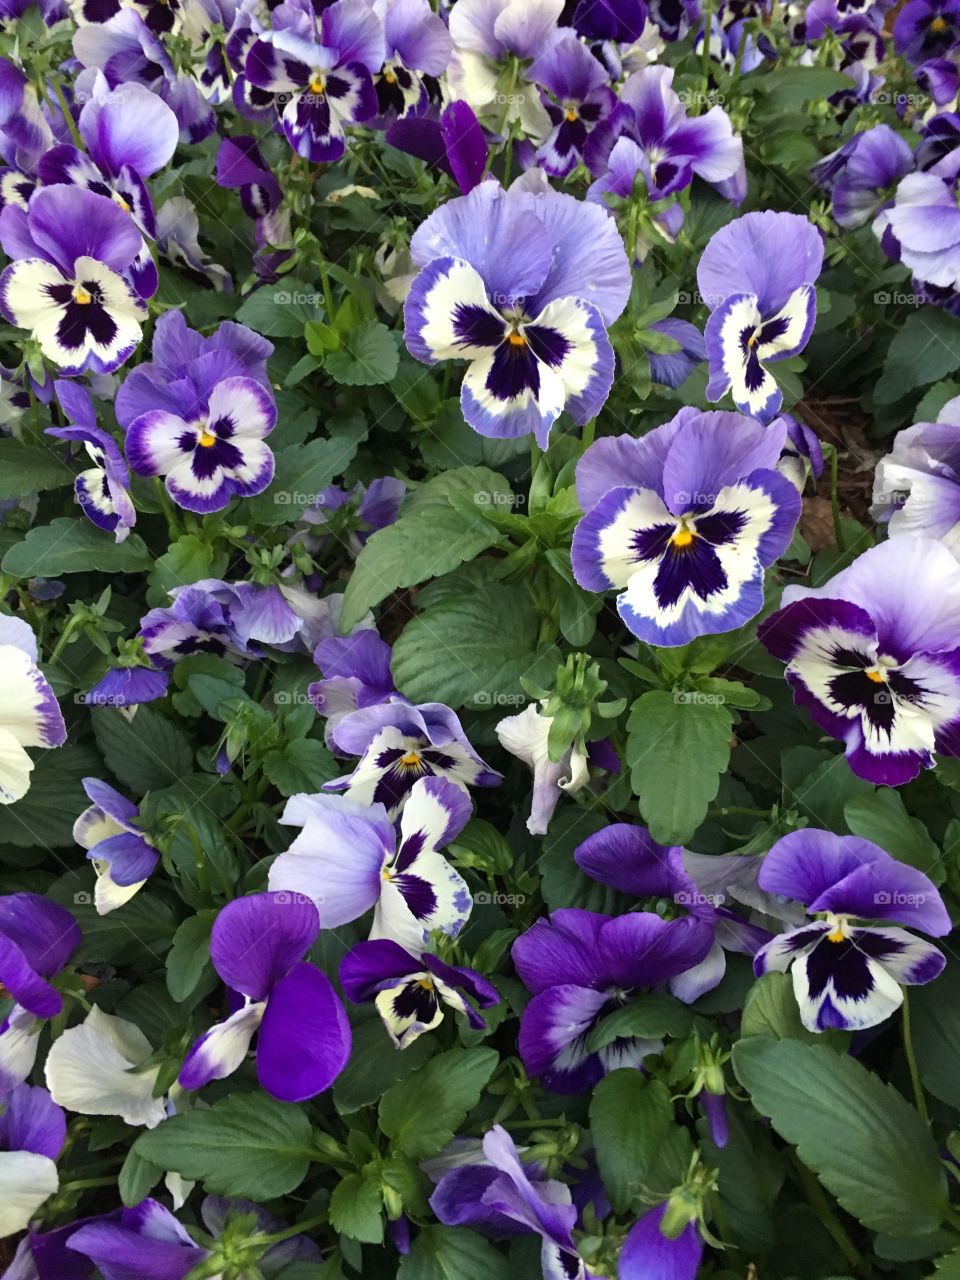 Many violets